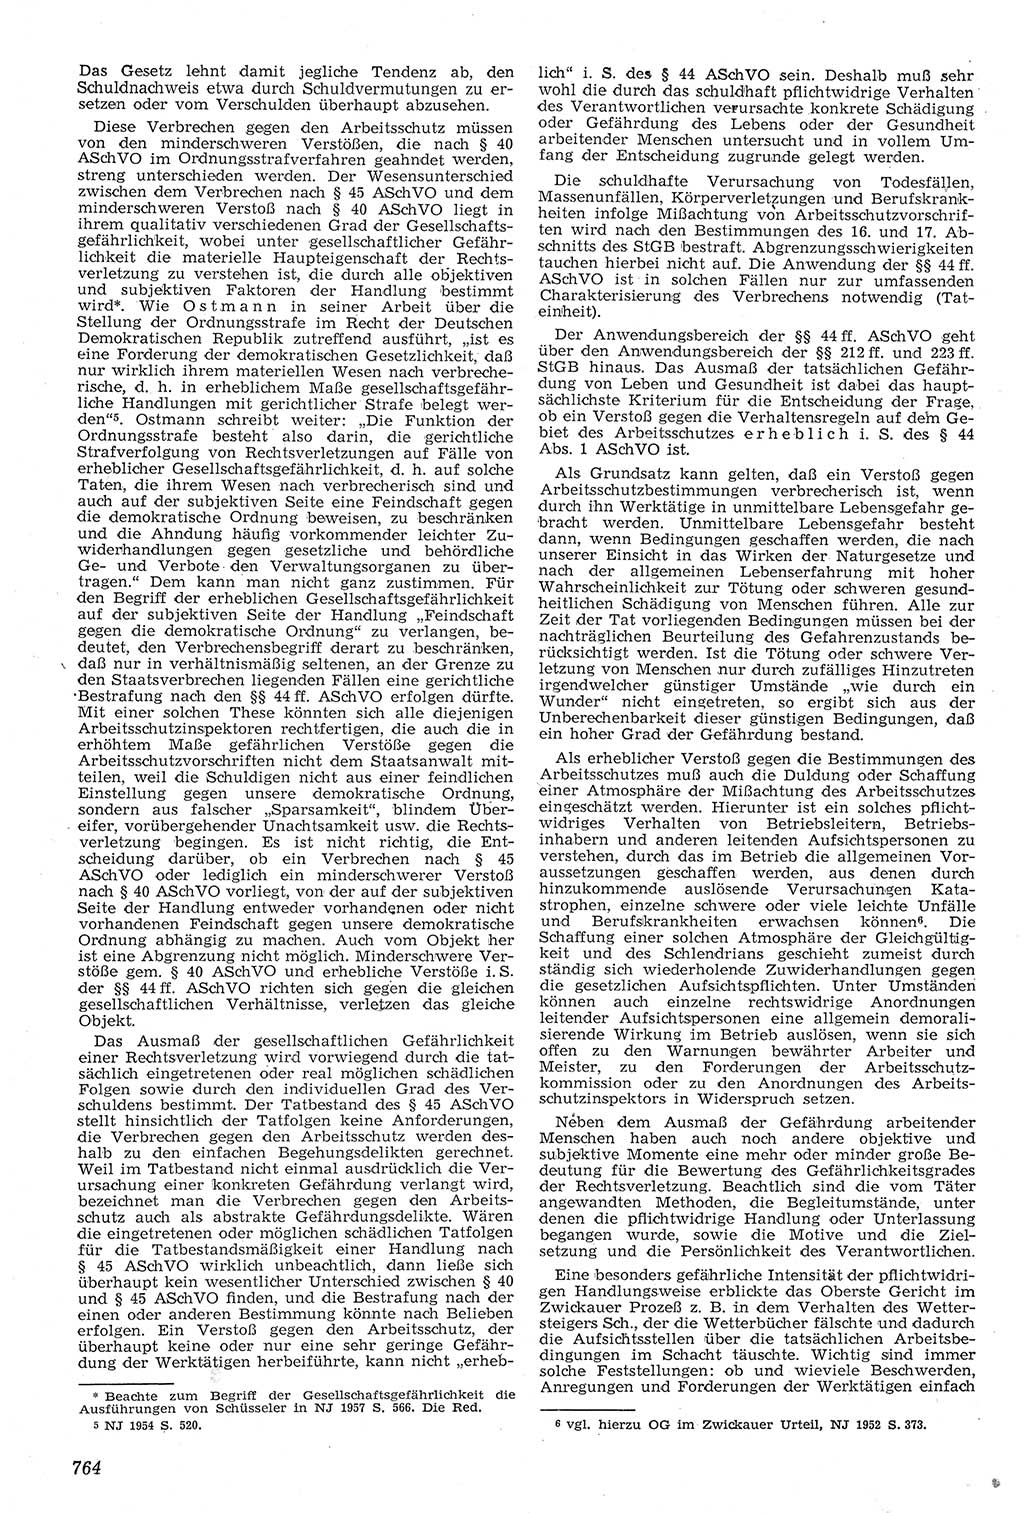 Neue Justiz (NJ), Zeitschrift für Recht und Rechtswissenschaft [Deutsche Demokratische Republik (DDR)], 11. Jahrgang 1957, Seite 764 (NJ DDR 1957, S. 764)